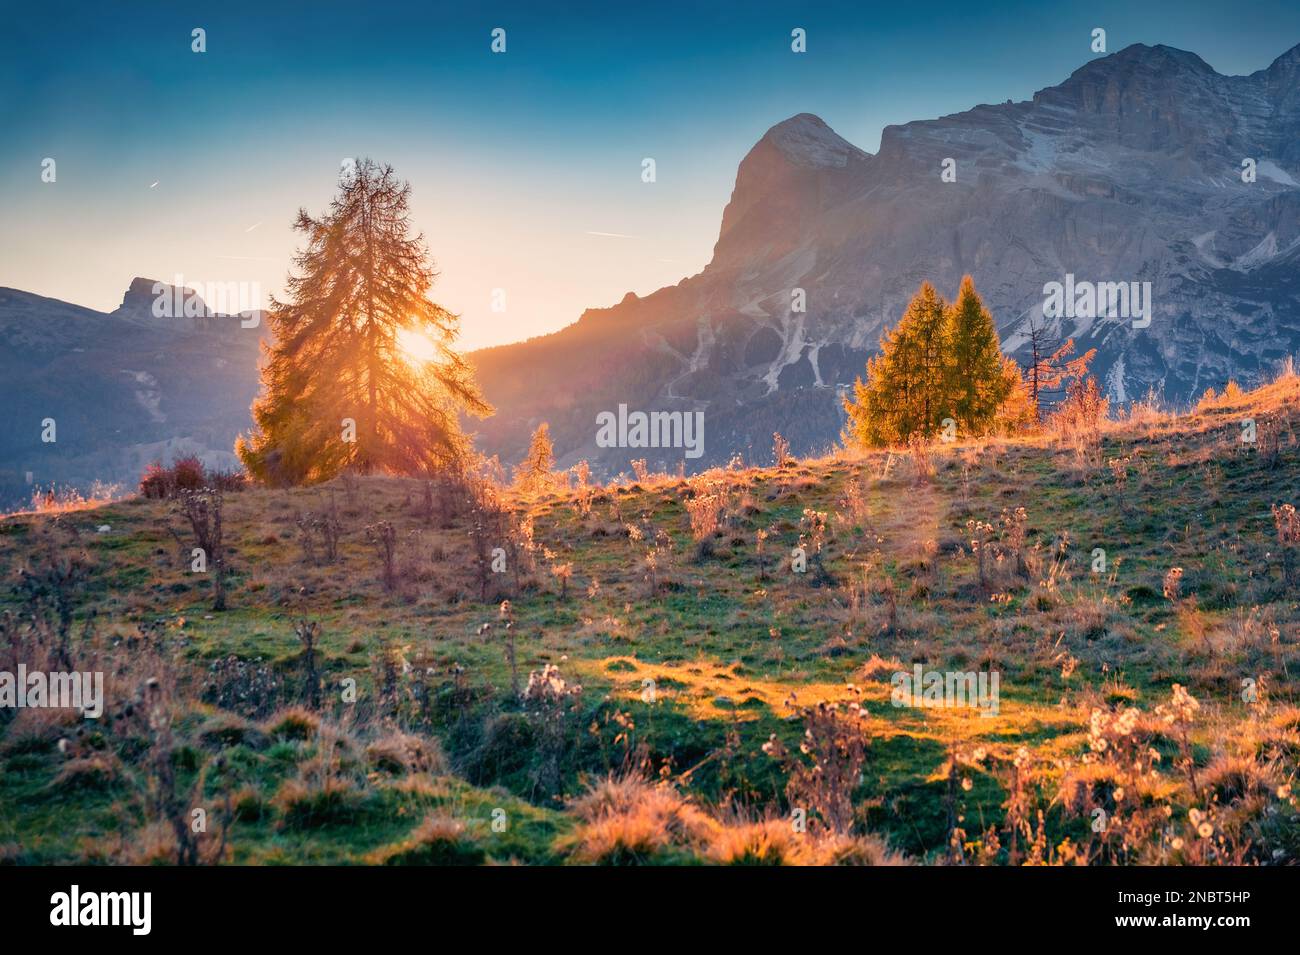 Vue en soirée colorée sur le col Tre Croci Cortina. Coucher de soleil incroyable dans les Alpes Dolomites. Incroyable scène extérieure de l'Italie, l'Europe. Concept de voyage de retour Banque D'Images